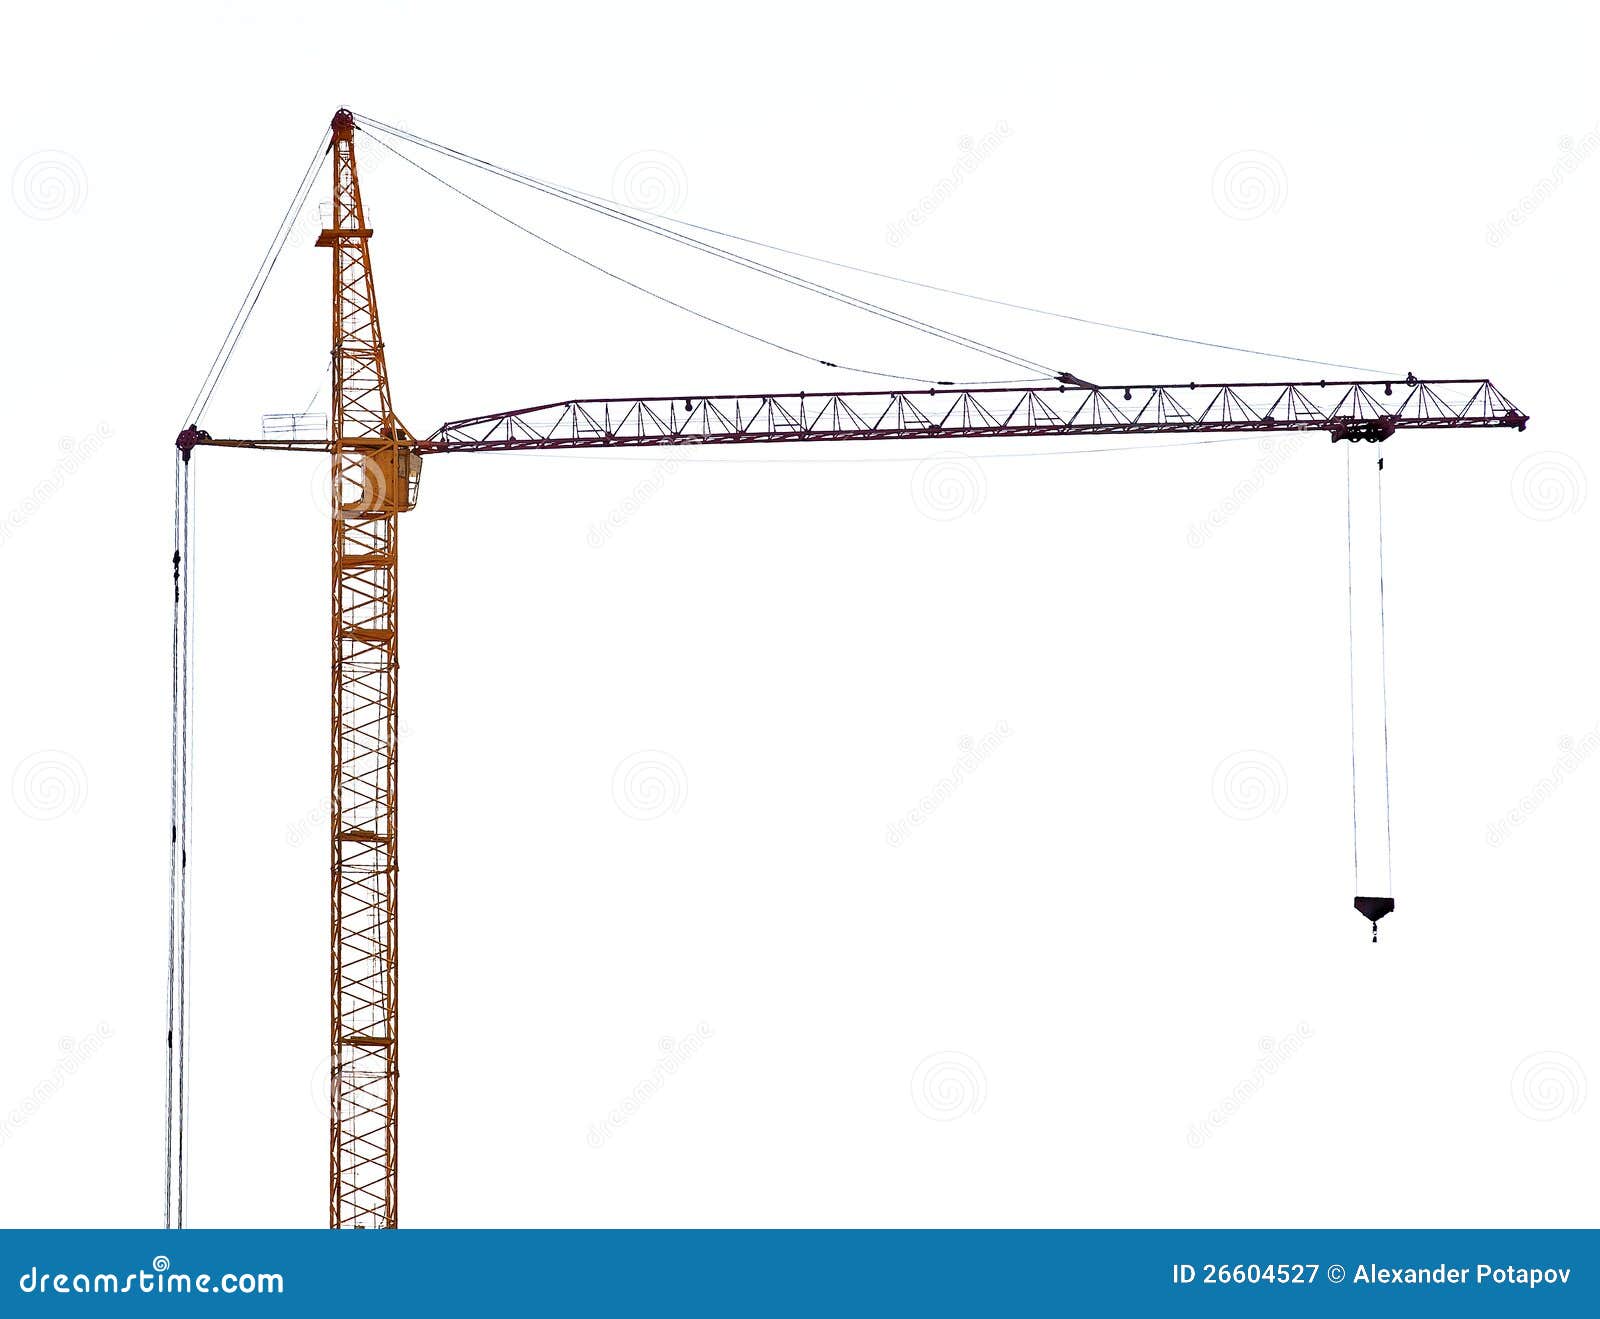 yellow hoisting crane with dark boom